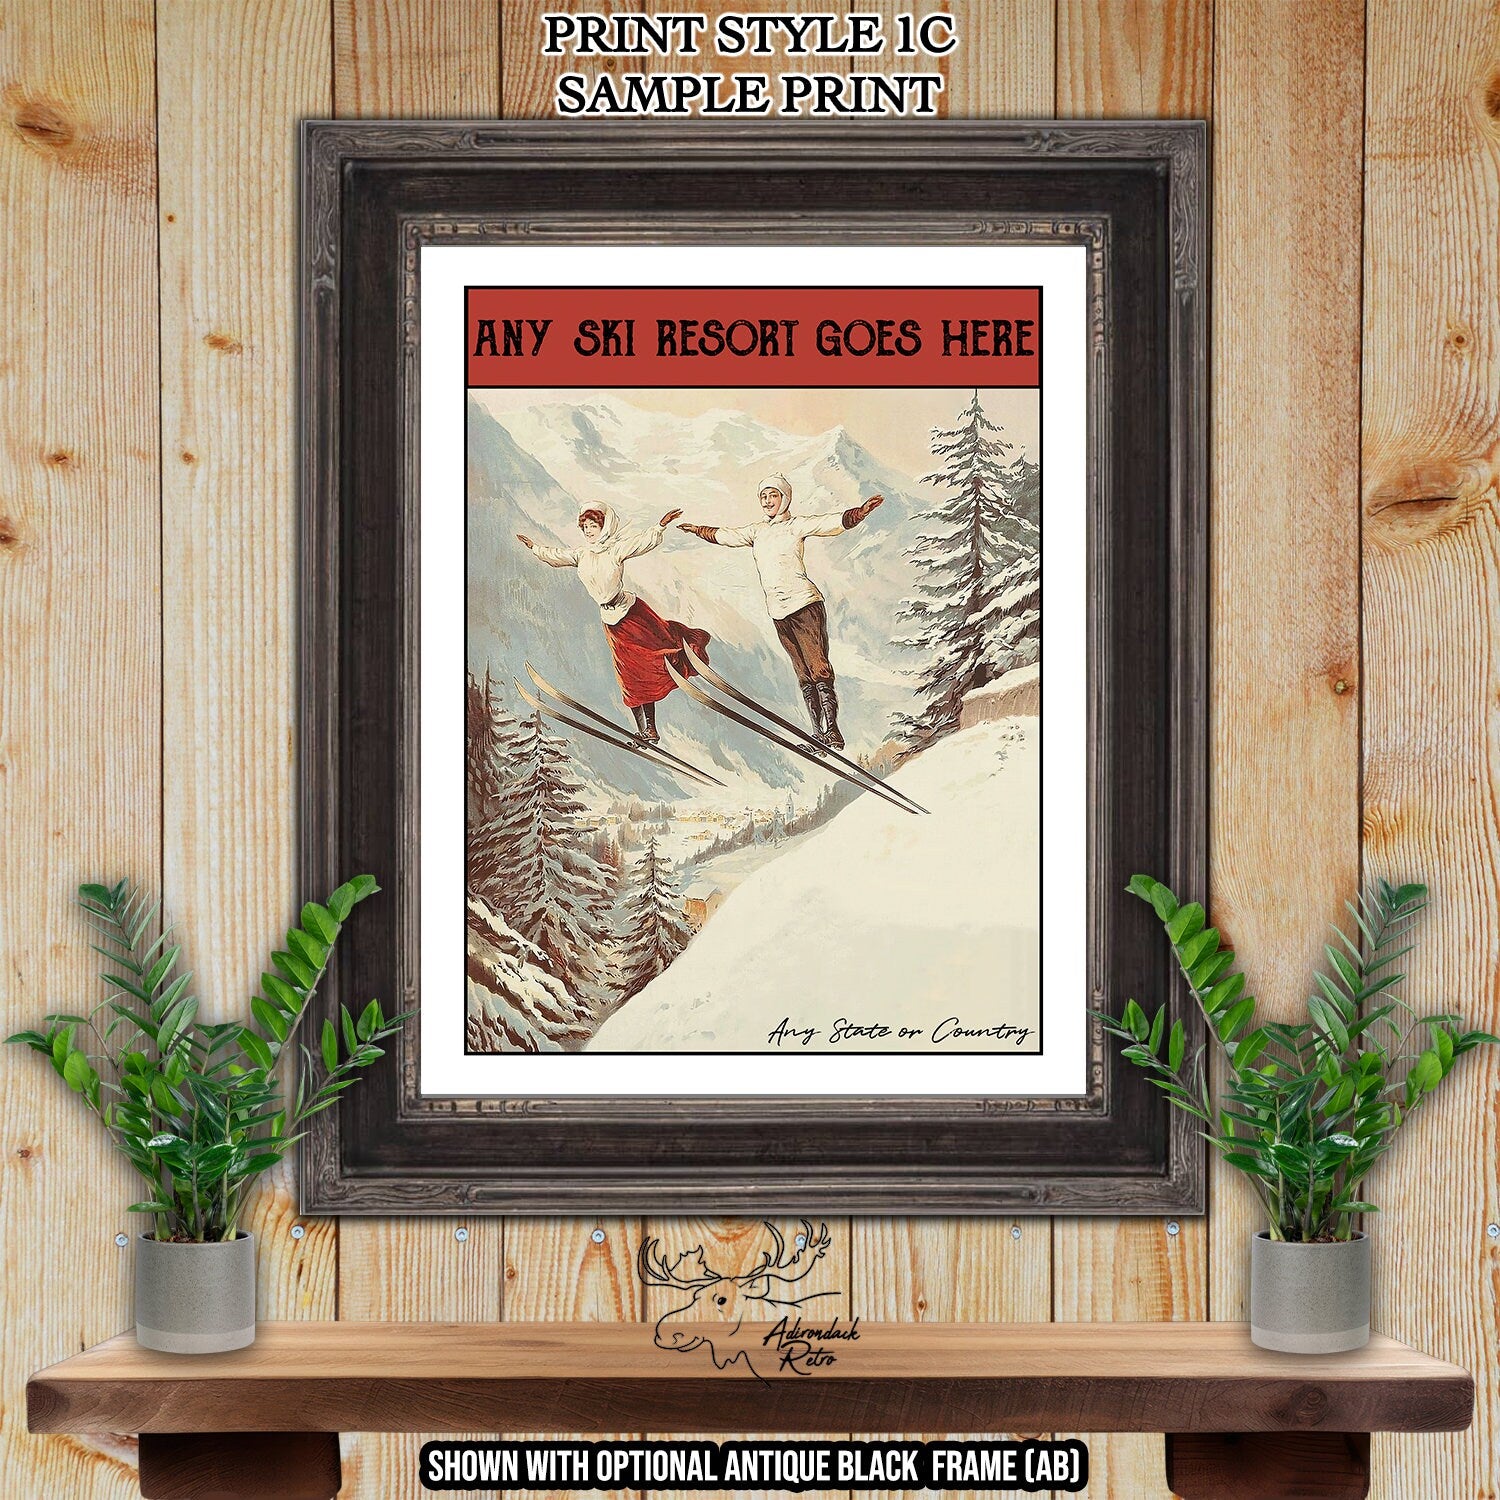 Filzmoos Austria Retro Ski Resort Art Print